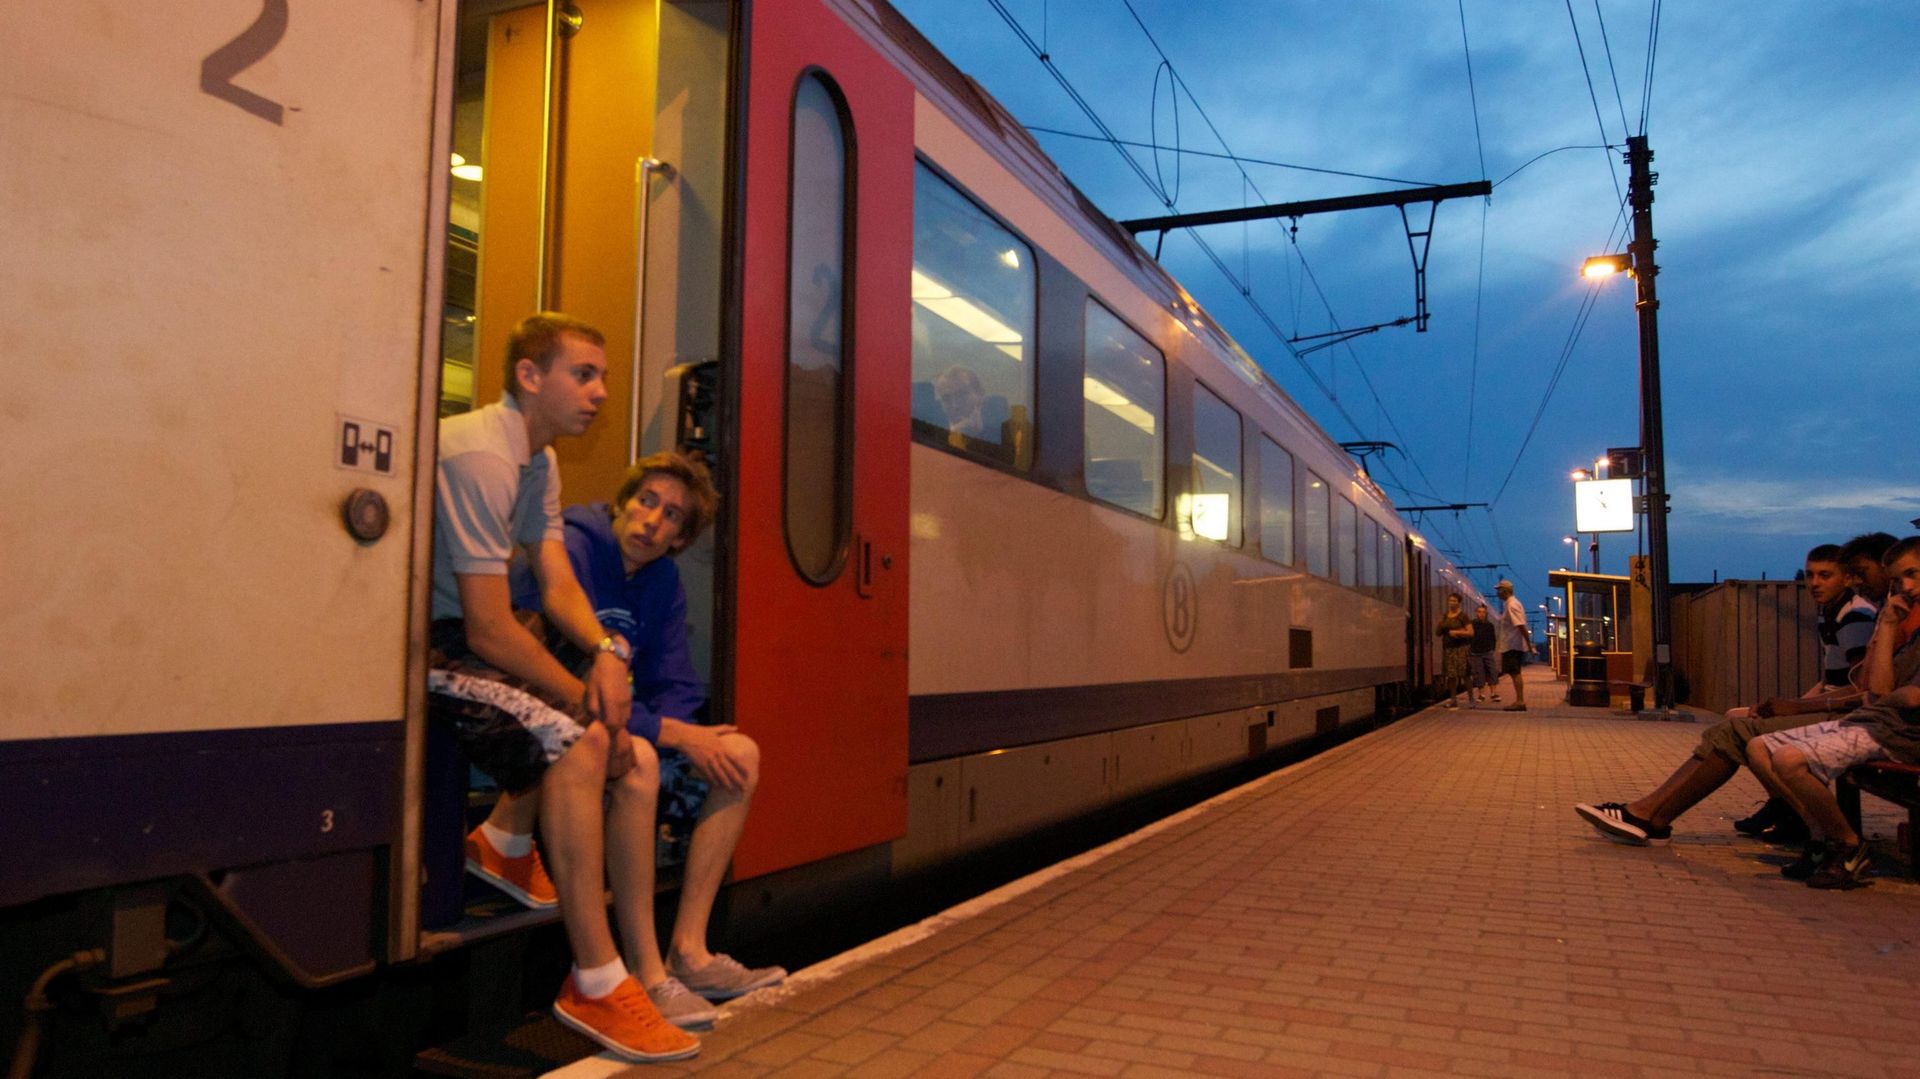 Le trafic ferroviaire est perturbé en plusieurs endroits, notamment du côté de Tournai/Mouscron (illustration).